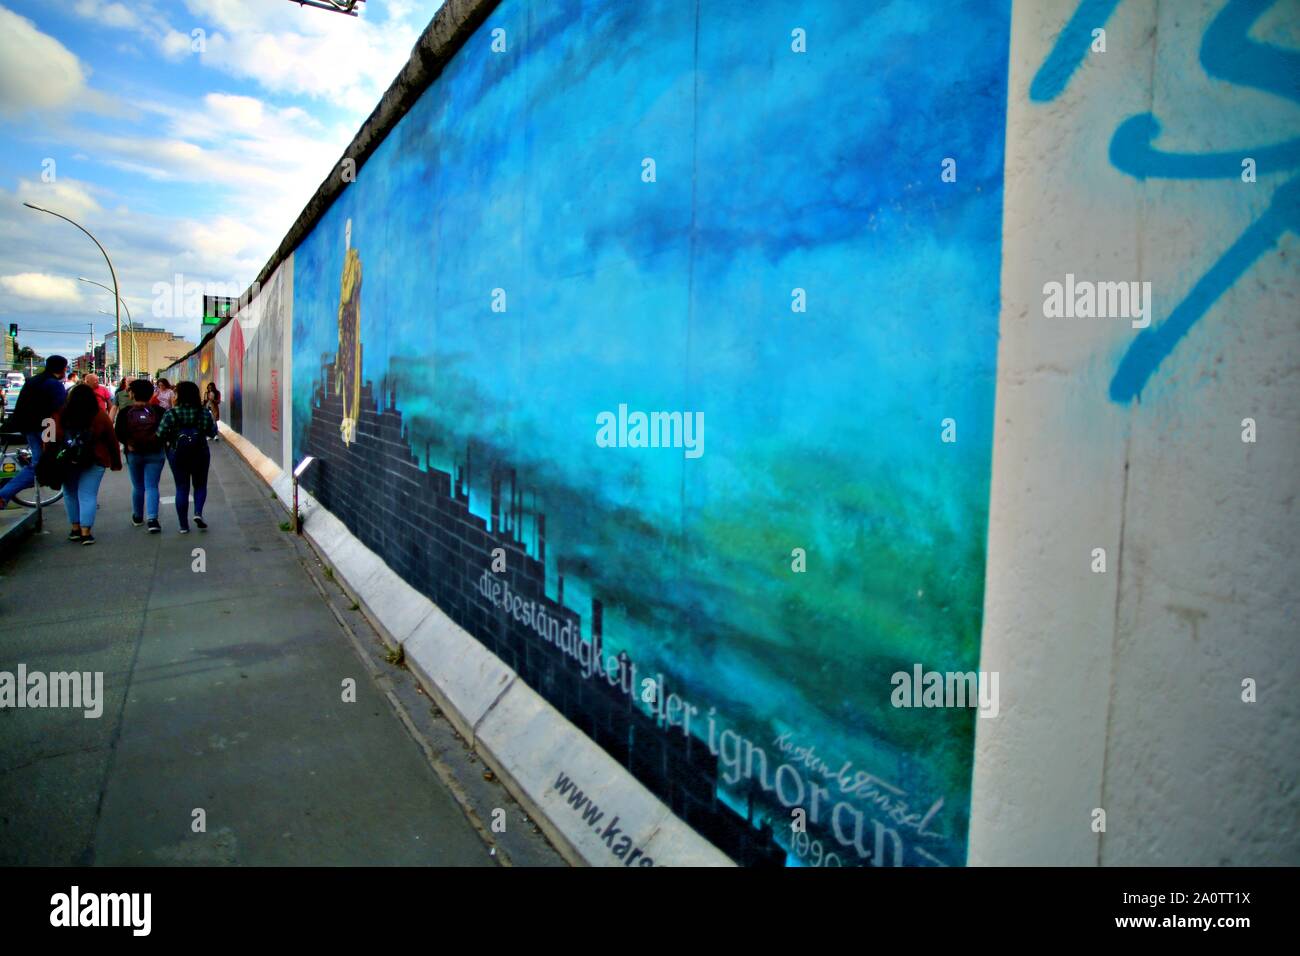 Berlino, Germania - 15 settembre: muro di Berlino graffiti visto il Sabato, Settembre 21, 2019 Berlino, Galleria sul lato orientale del Muro di Berlino in famoso memoriale. Foto Stock